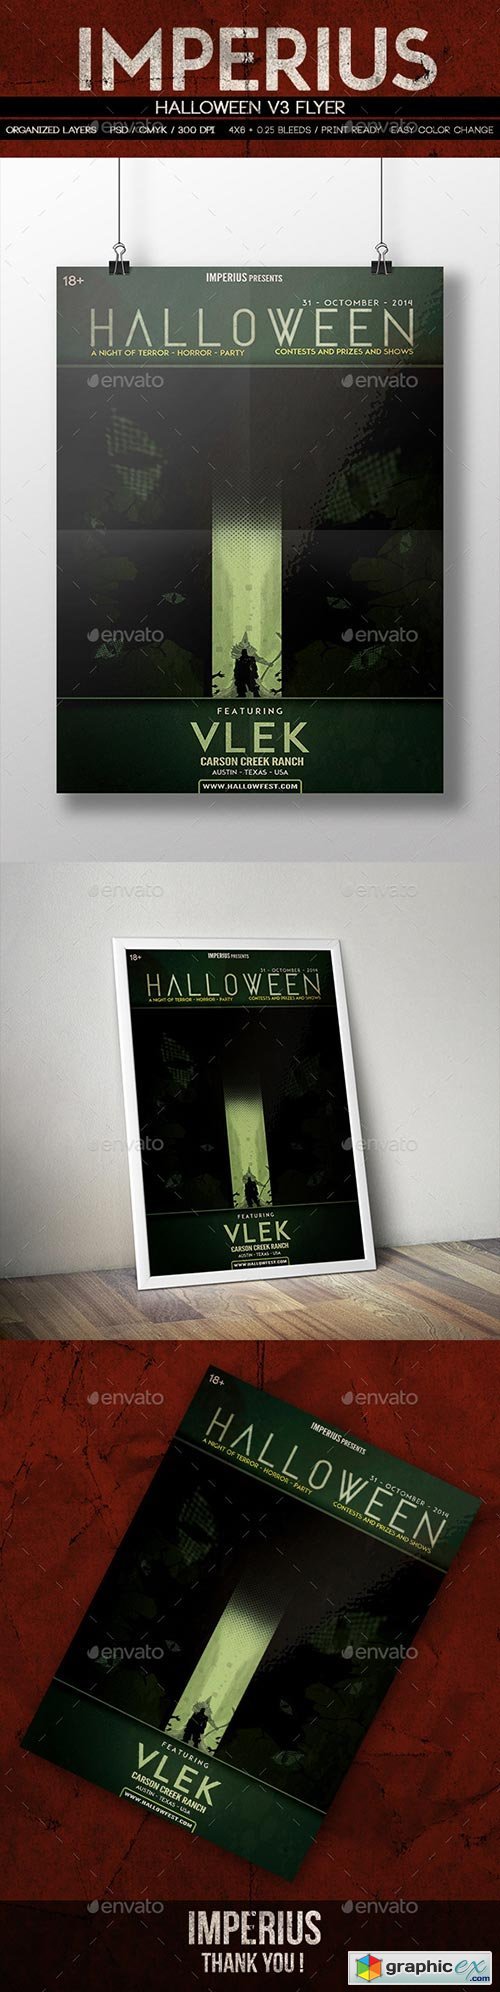 Halloween V3 Flyer